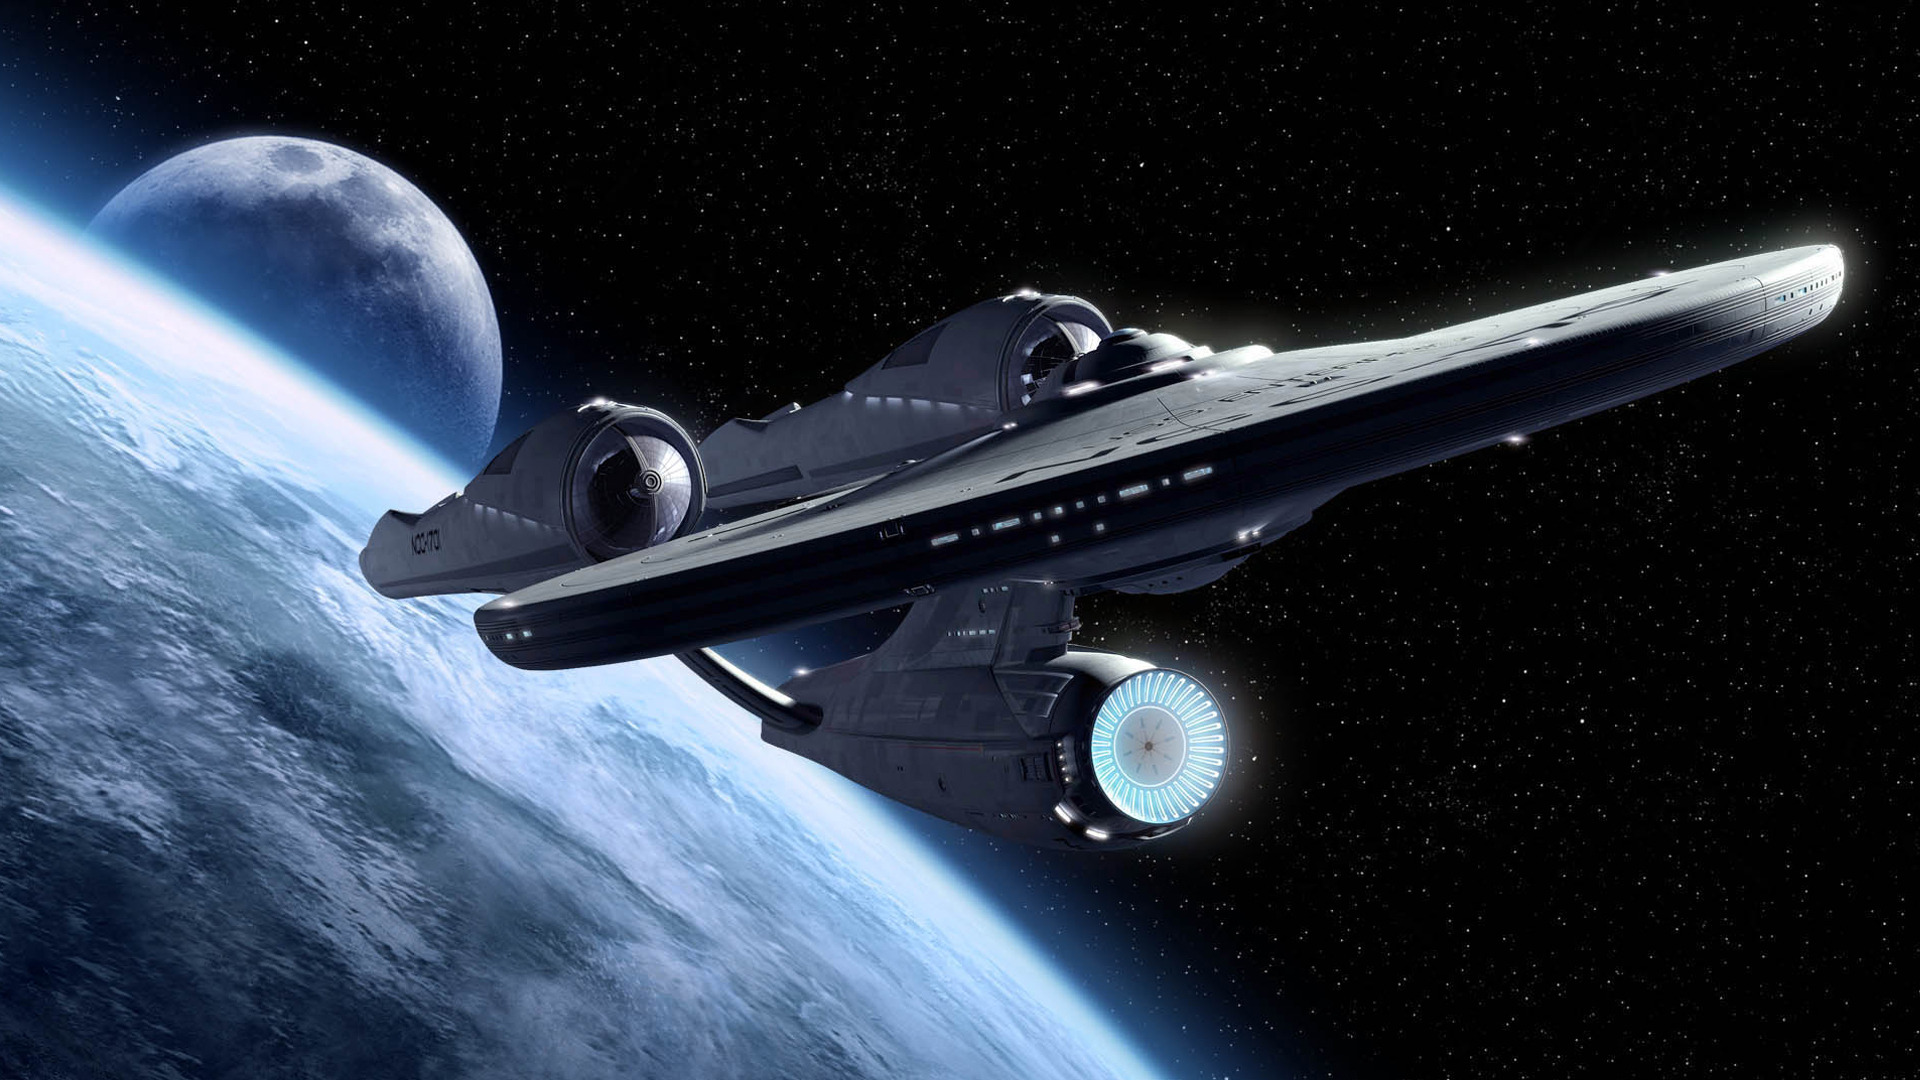 Starship Enterprise Star Trek Wallpaper